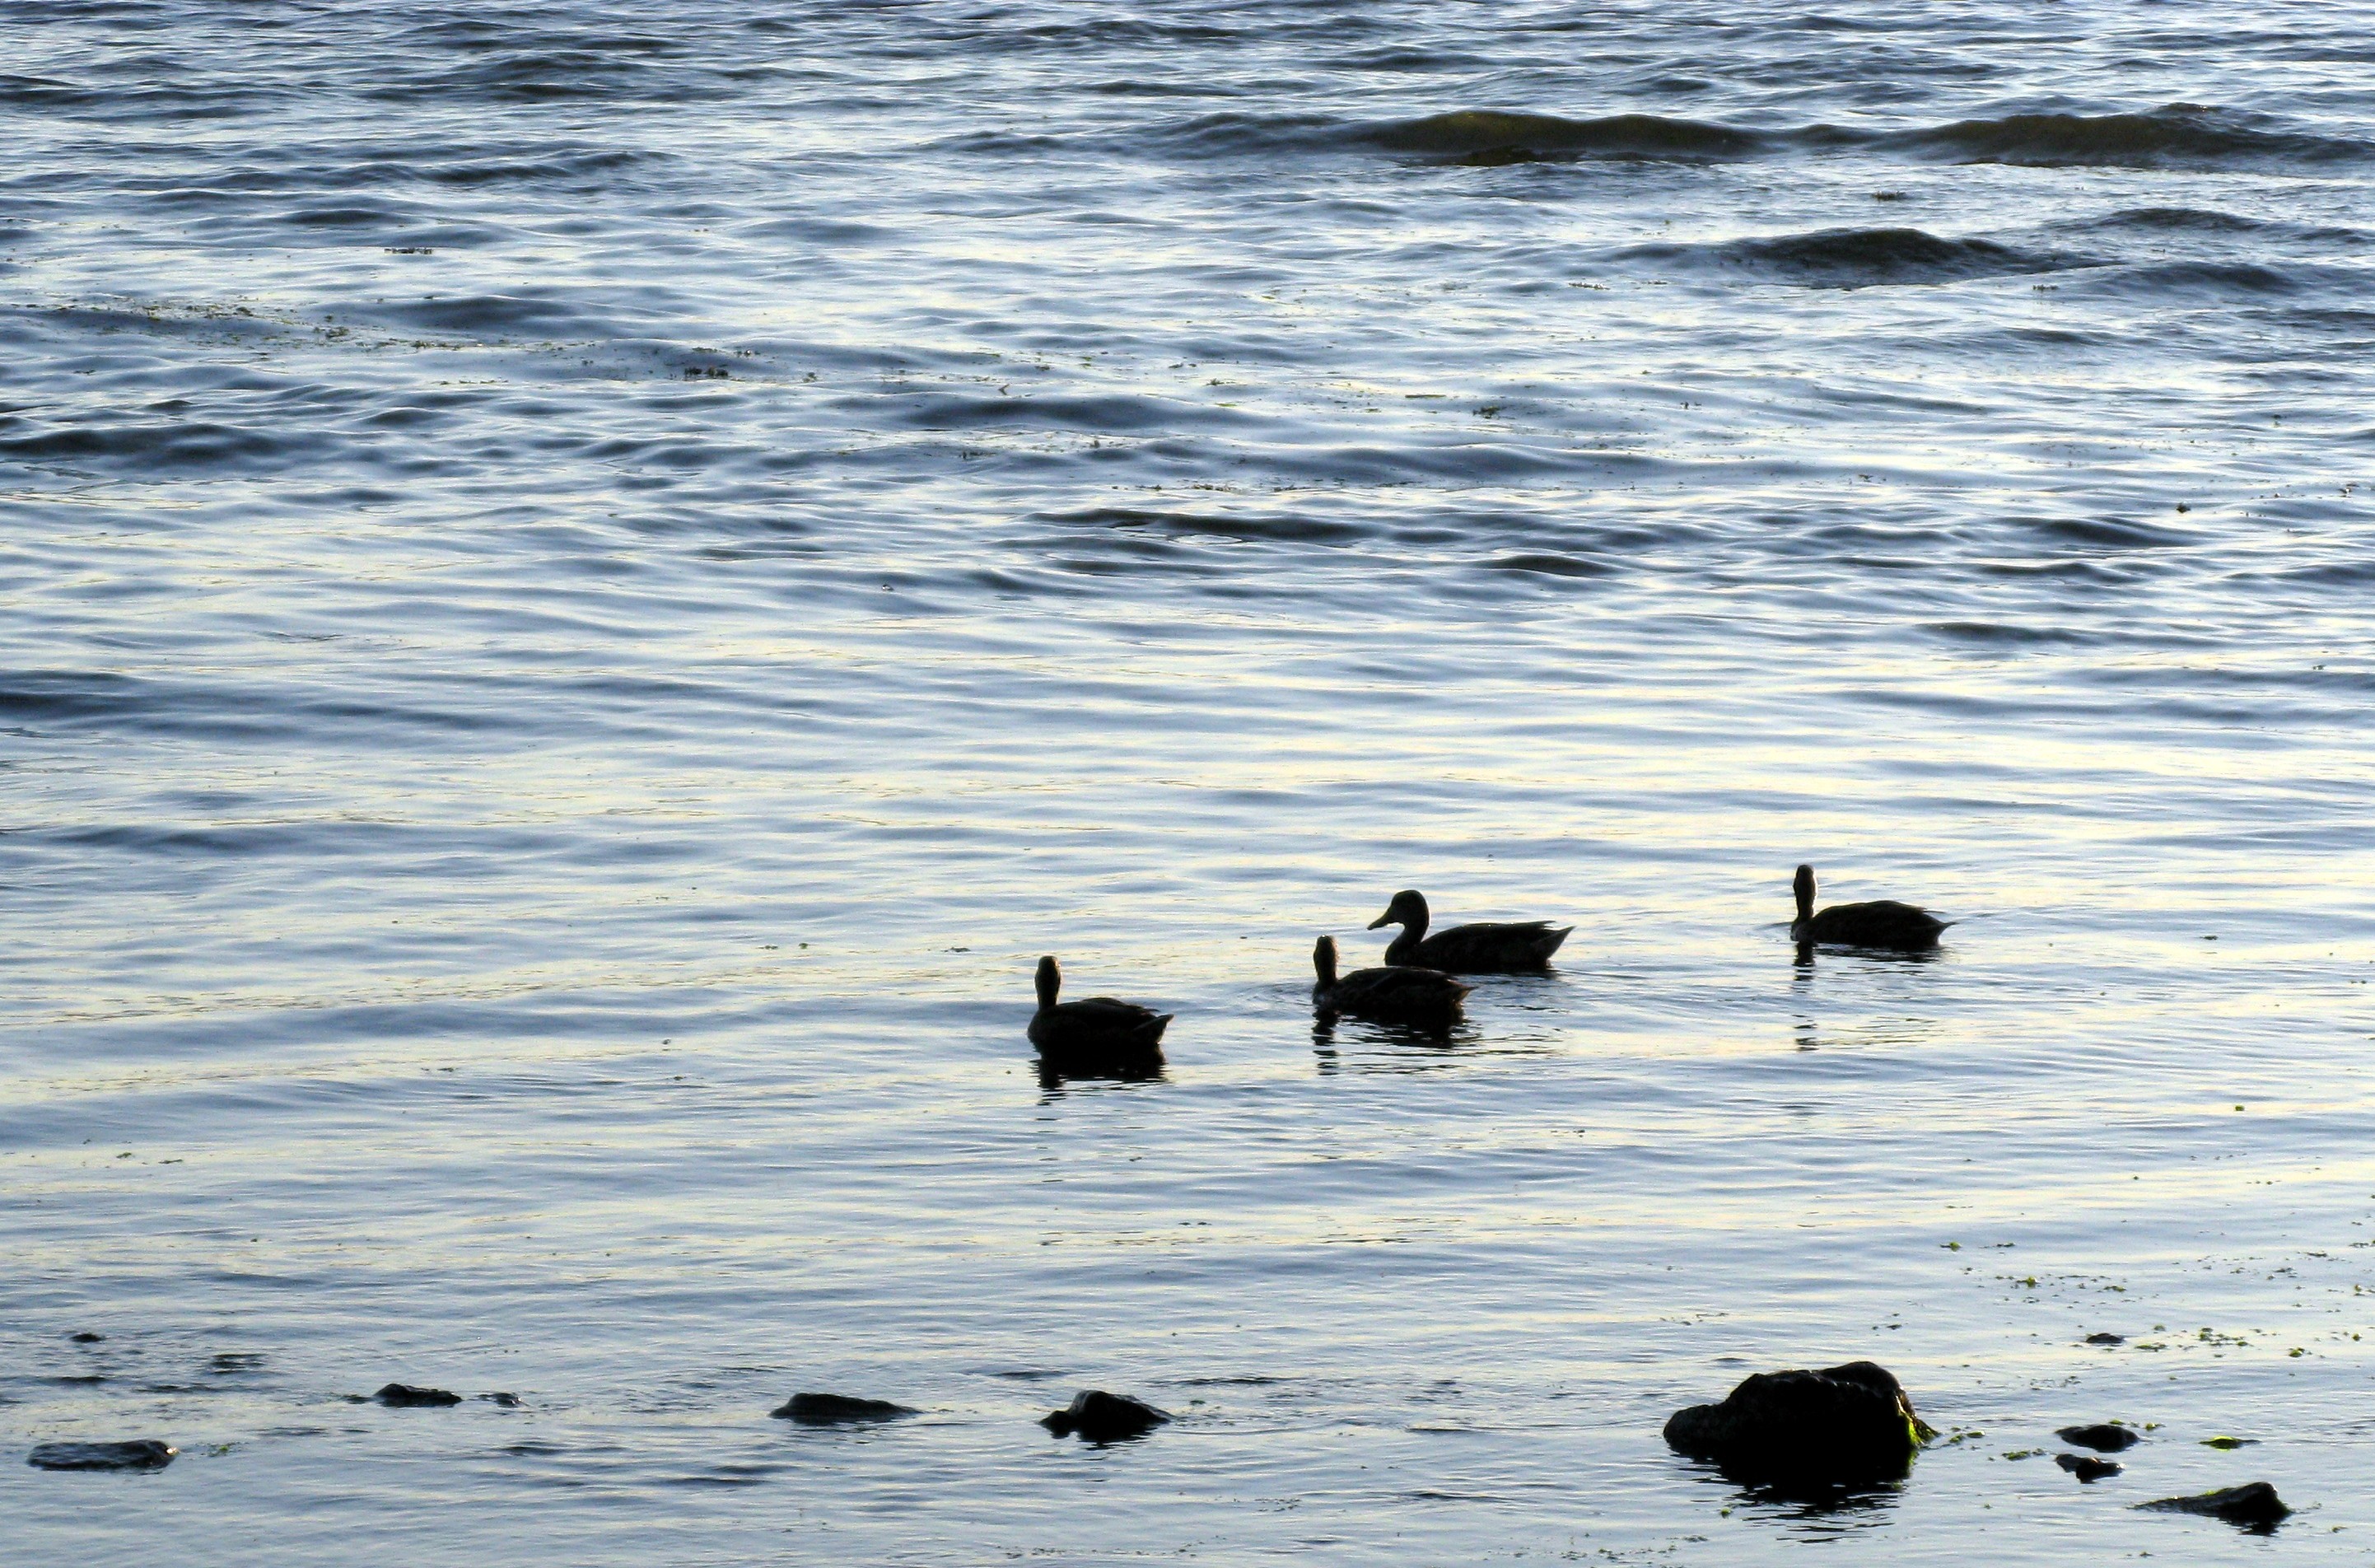 Puget Sound ducks